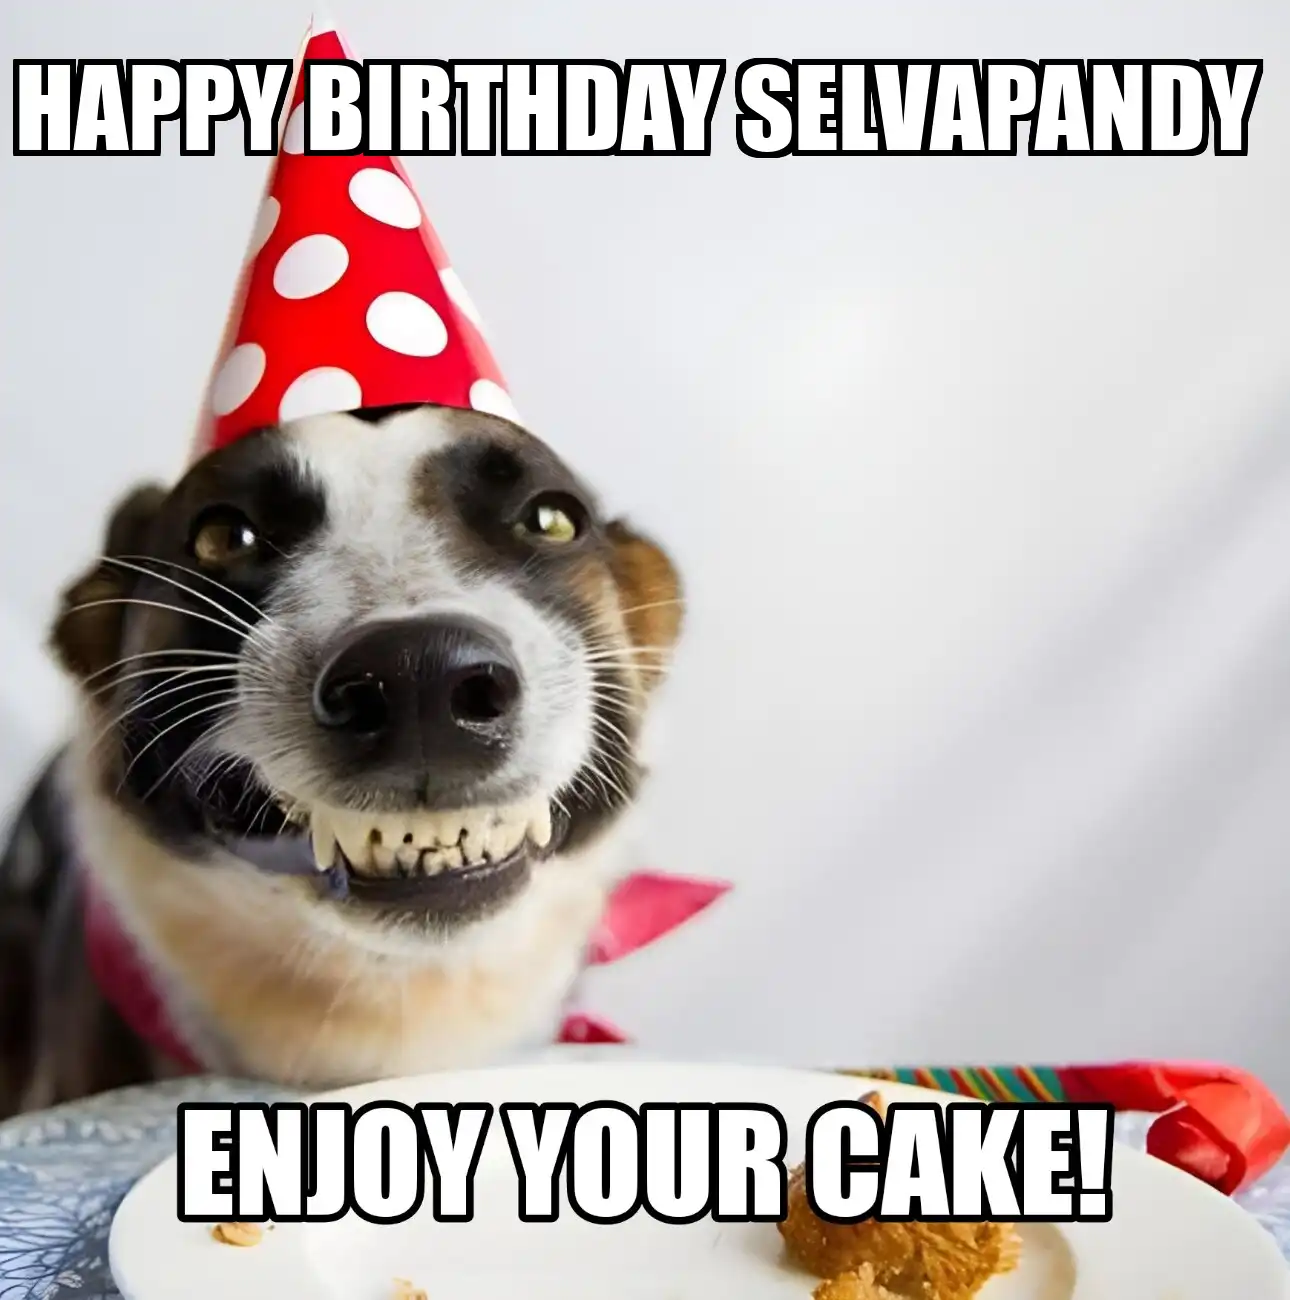 Happy Birthday Selvapandy Enjoy Your Cake Dog Meme